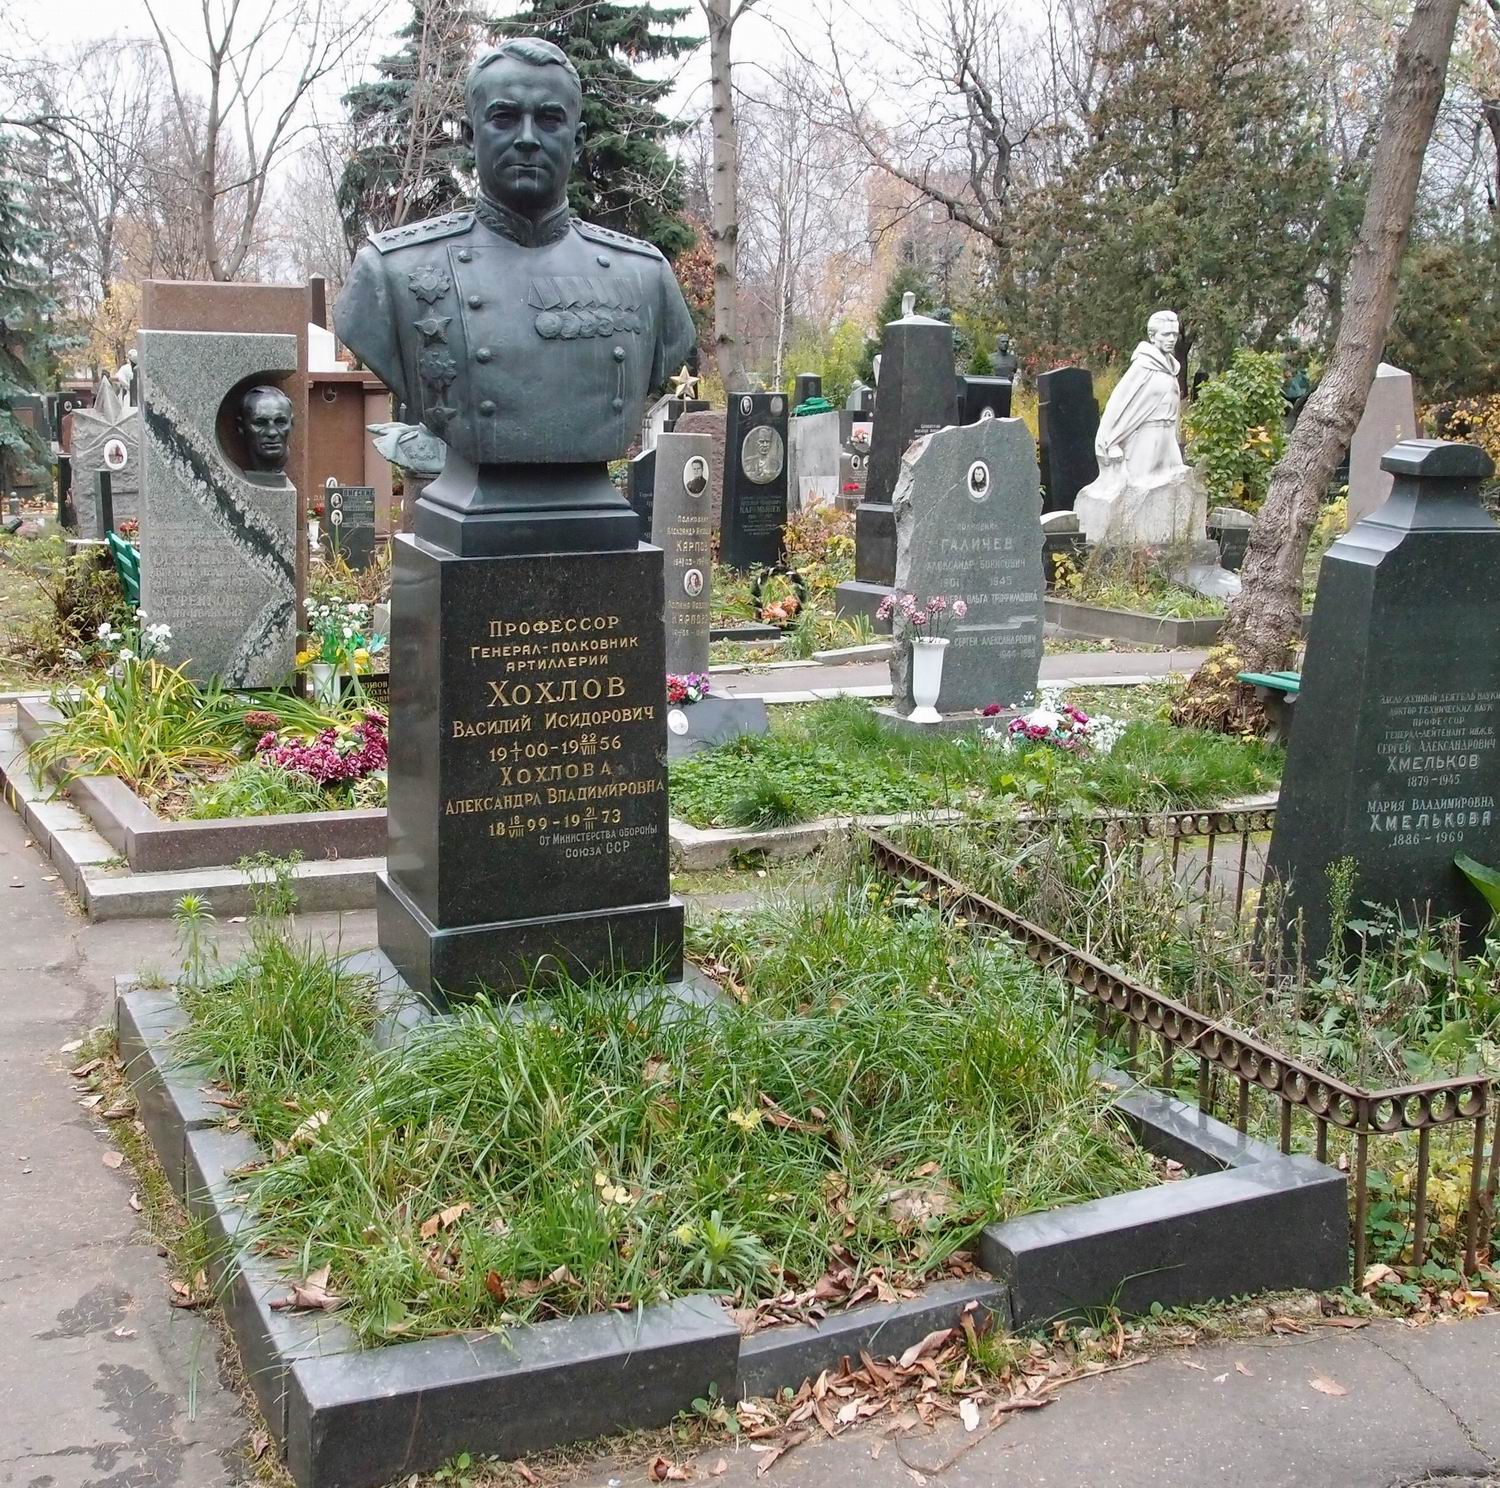 Памятник на могиле Хохлова В.И. (1900-1956), ск. Д.Никитин, на Новодевичьем кладбище (4-7-21).